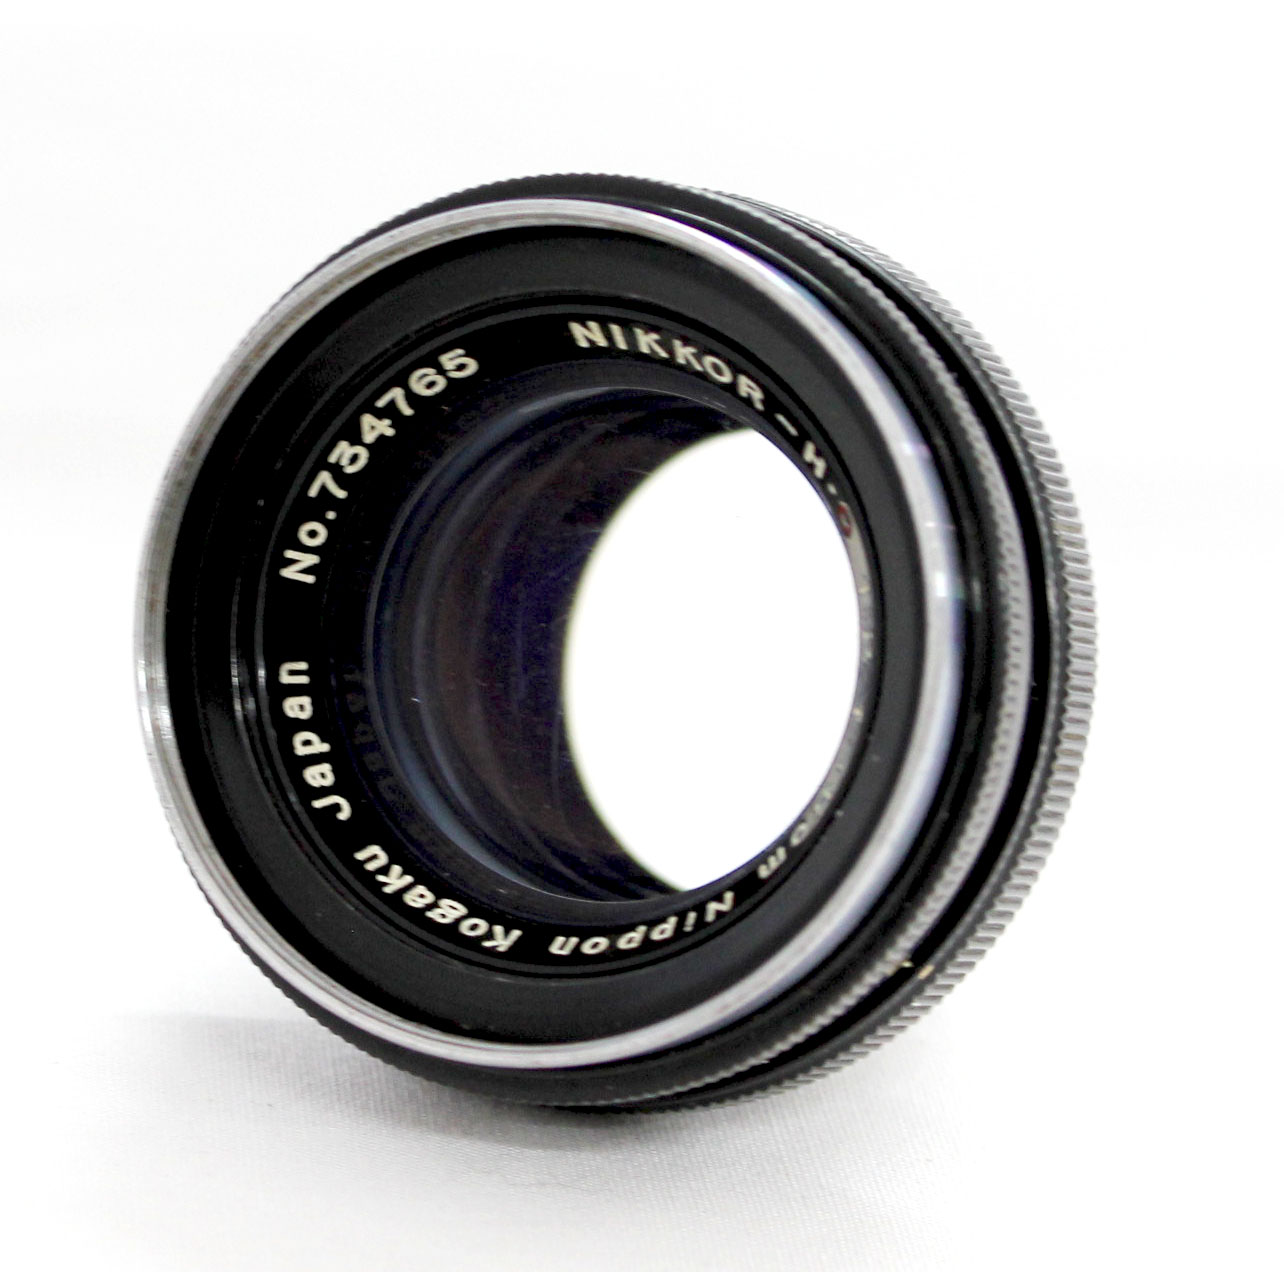  Nippon Kogaku Nikkor-H.C 5cm 50mm F/2 Lens for Nikon S Mount from Japan Photo 0